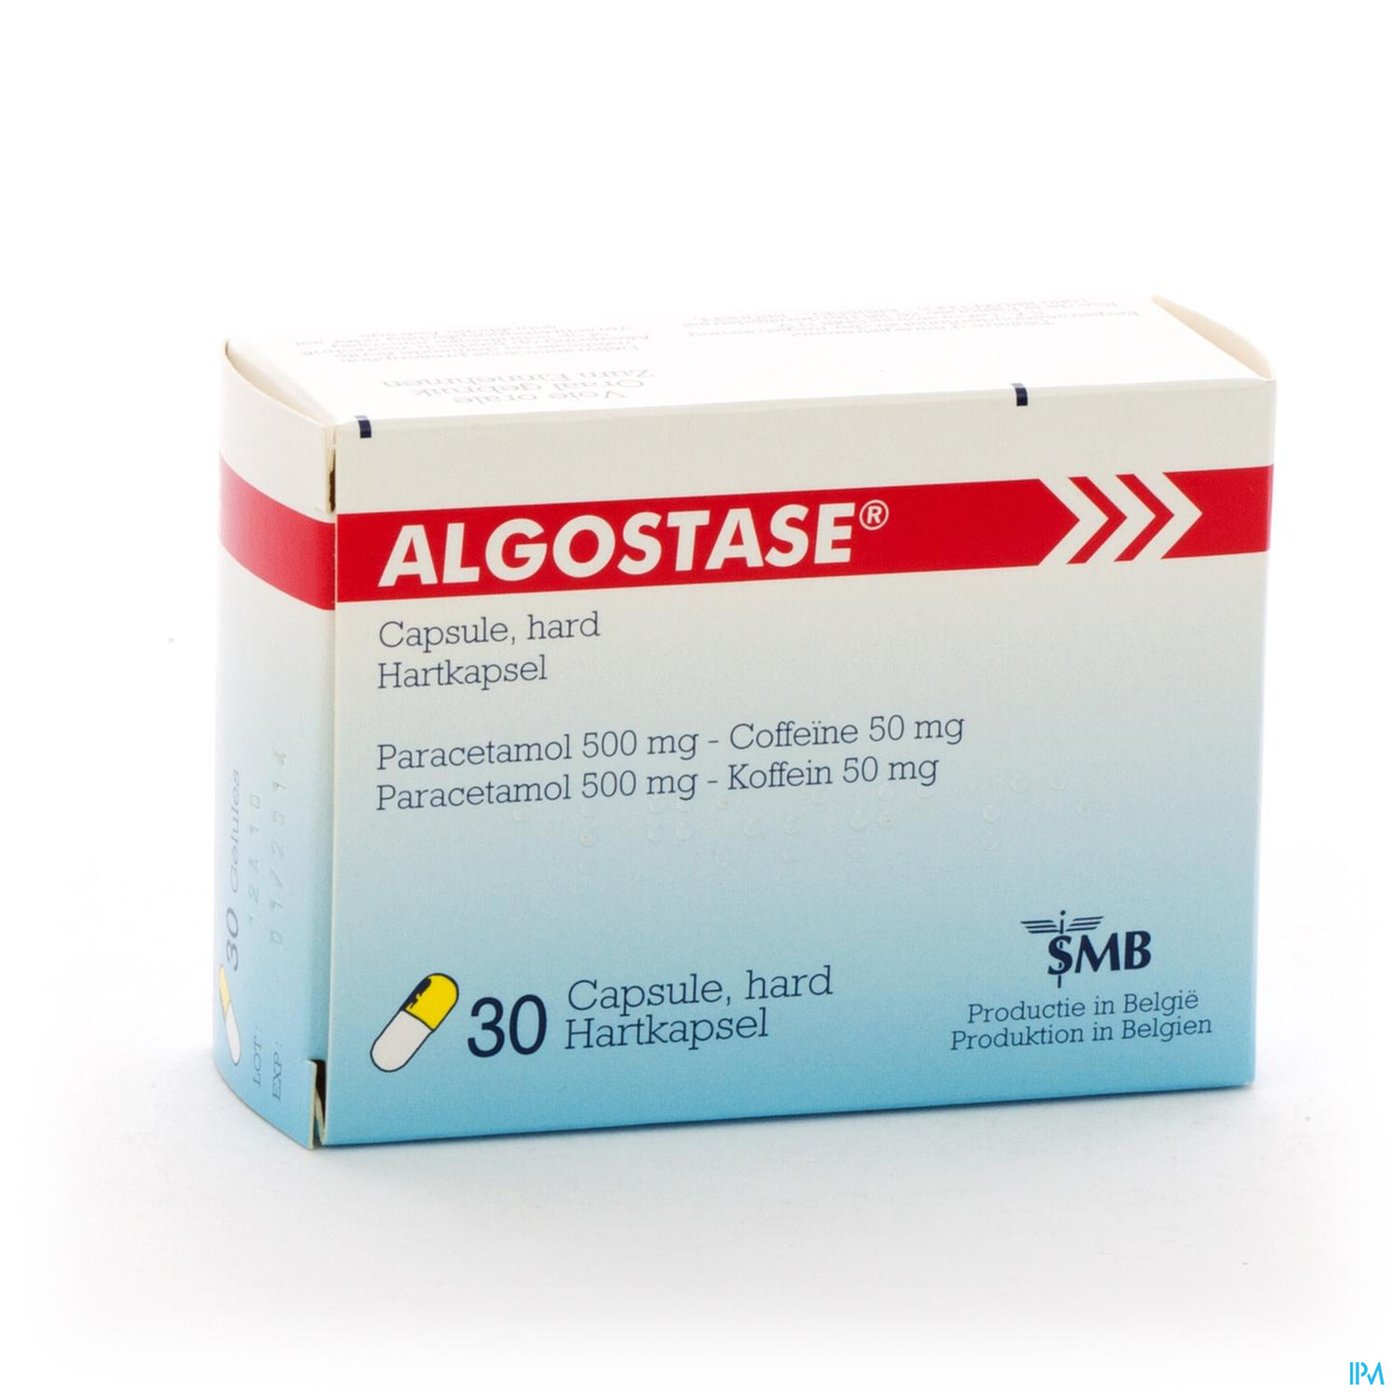 Algostase Nf Caps. 30 packshot